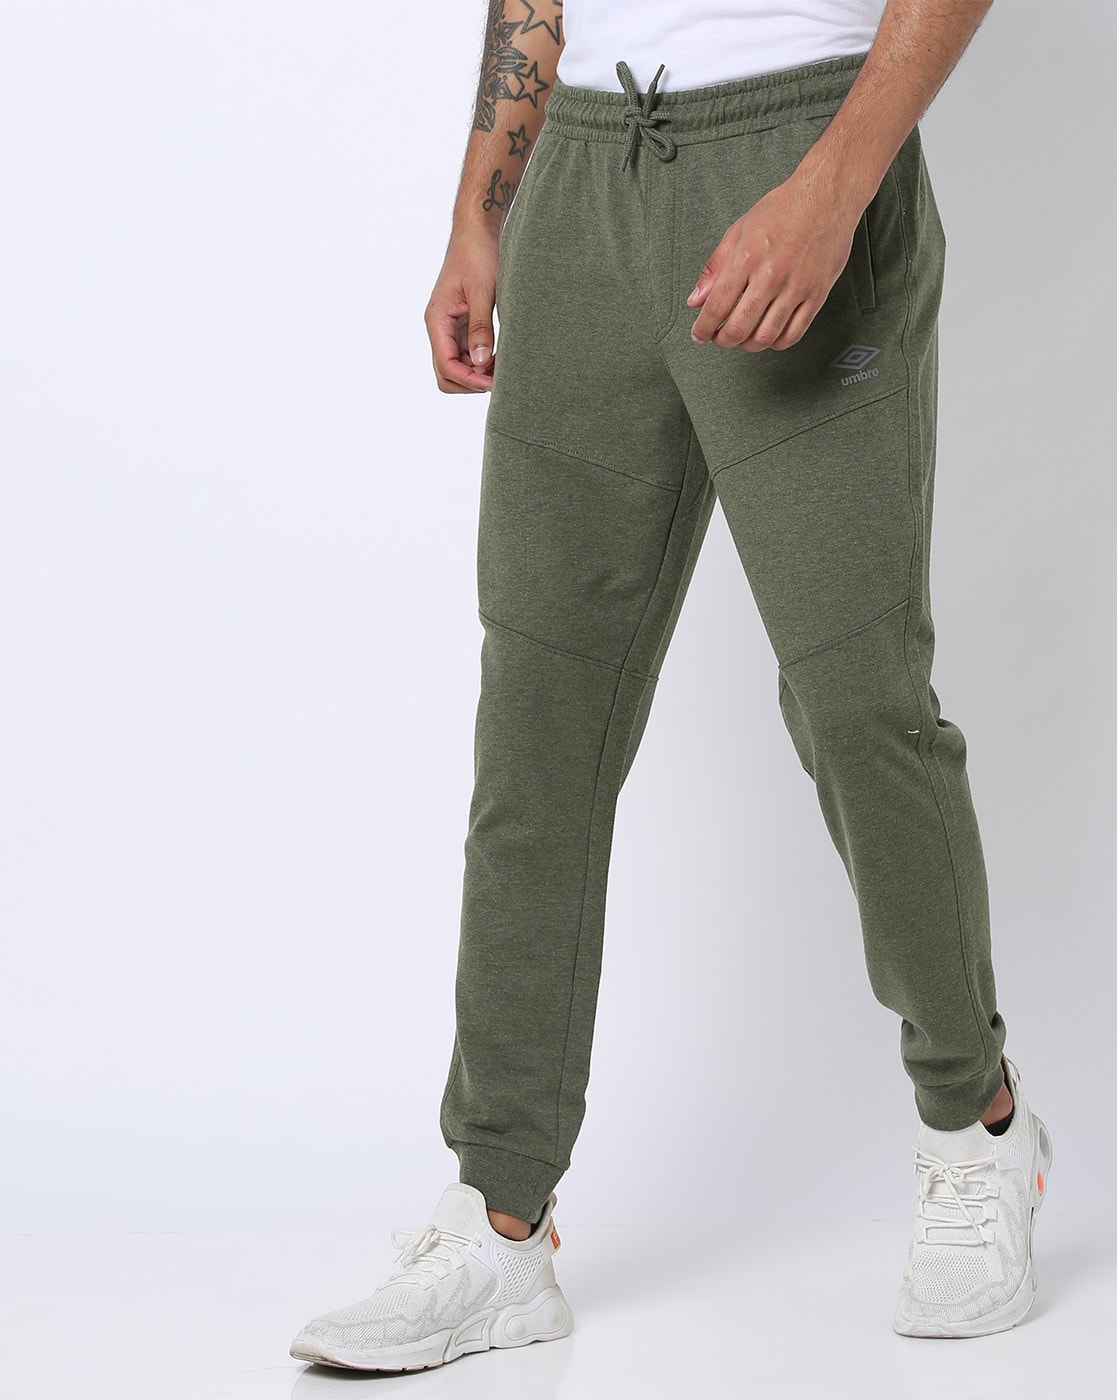 officieel wat betreft gemeenschap Buy Olive Green Track Pants for Men by UMBRO Online | Ajio.com